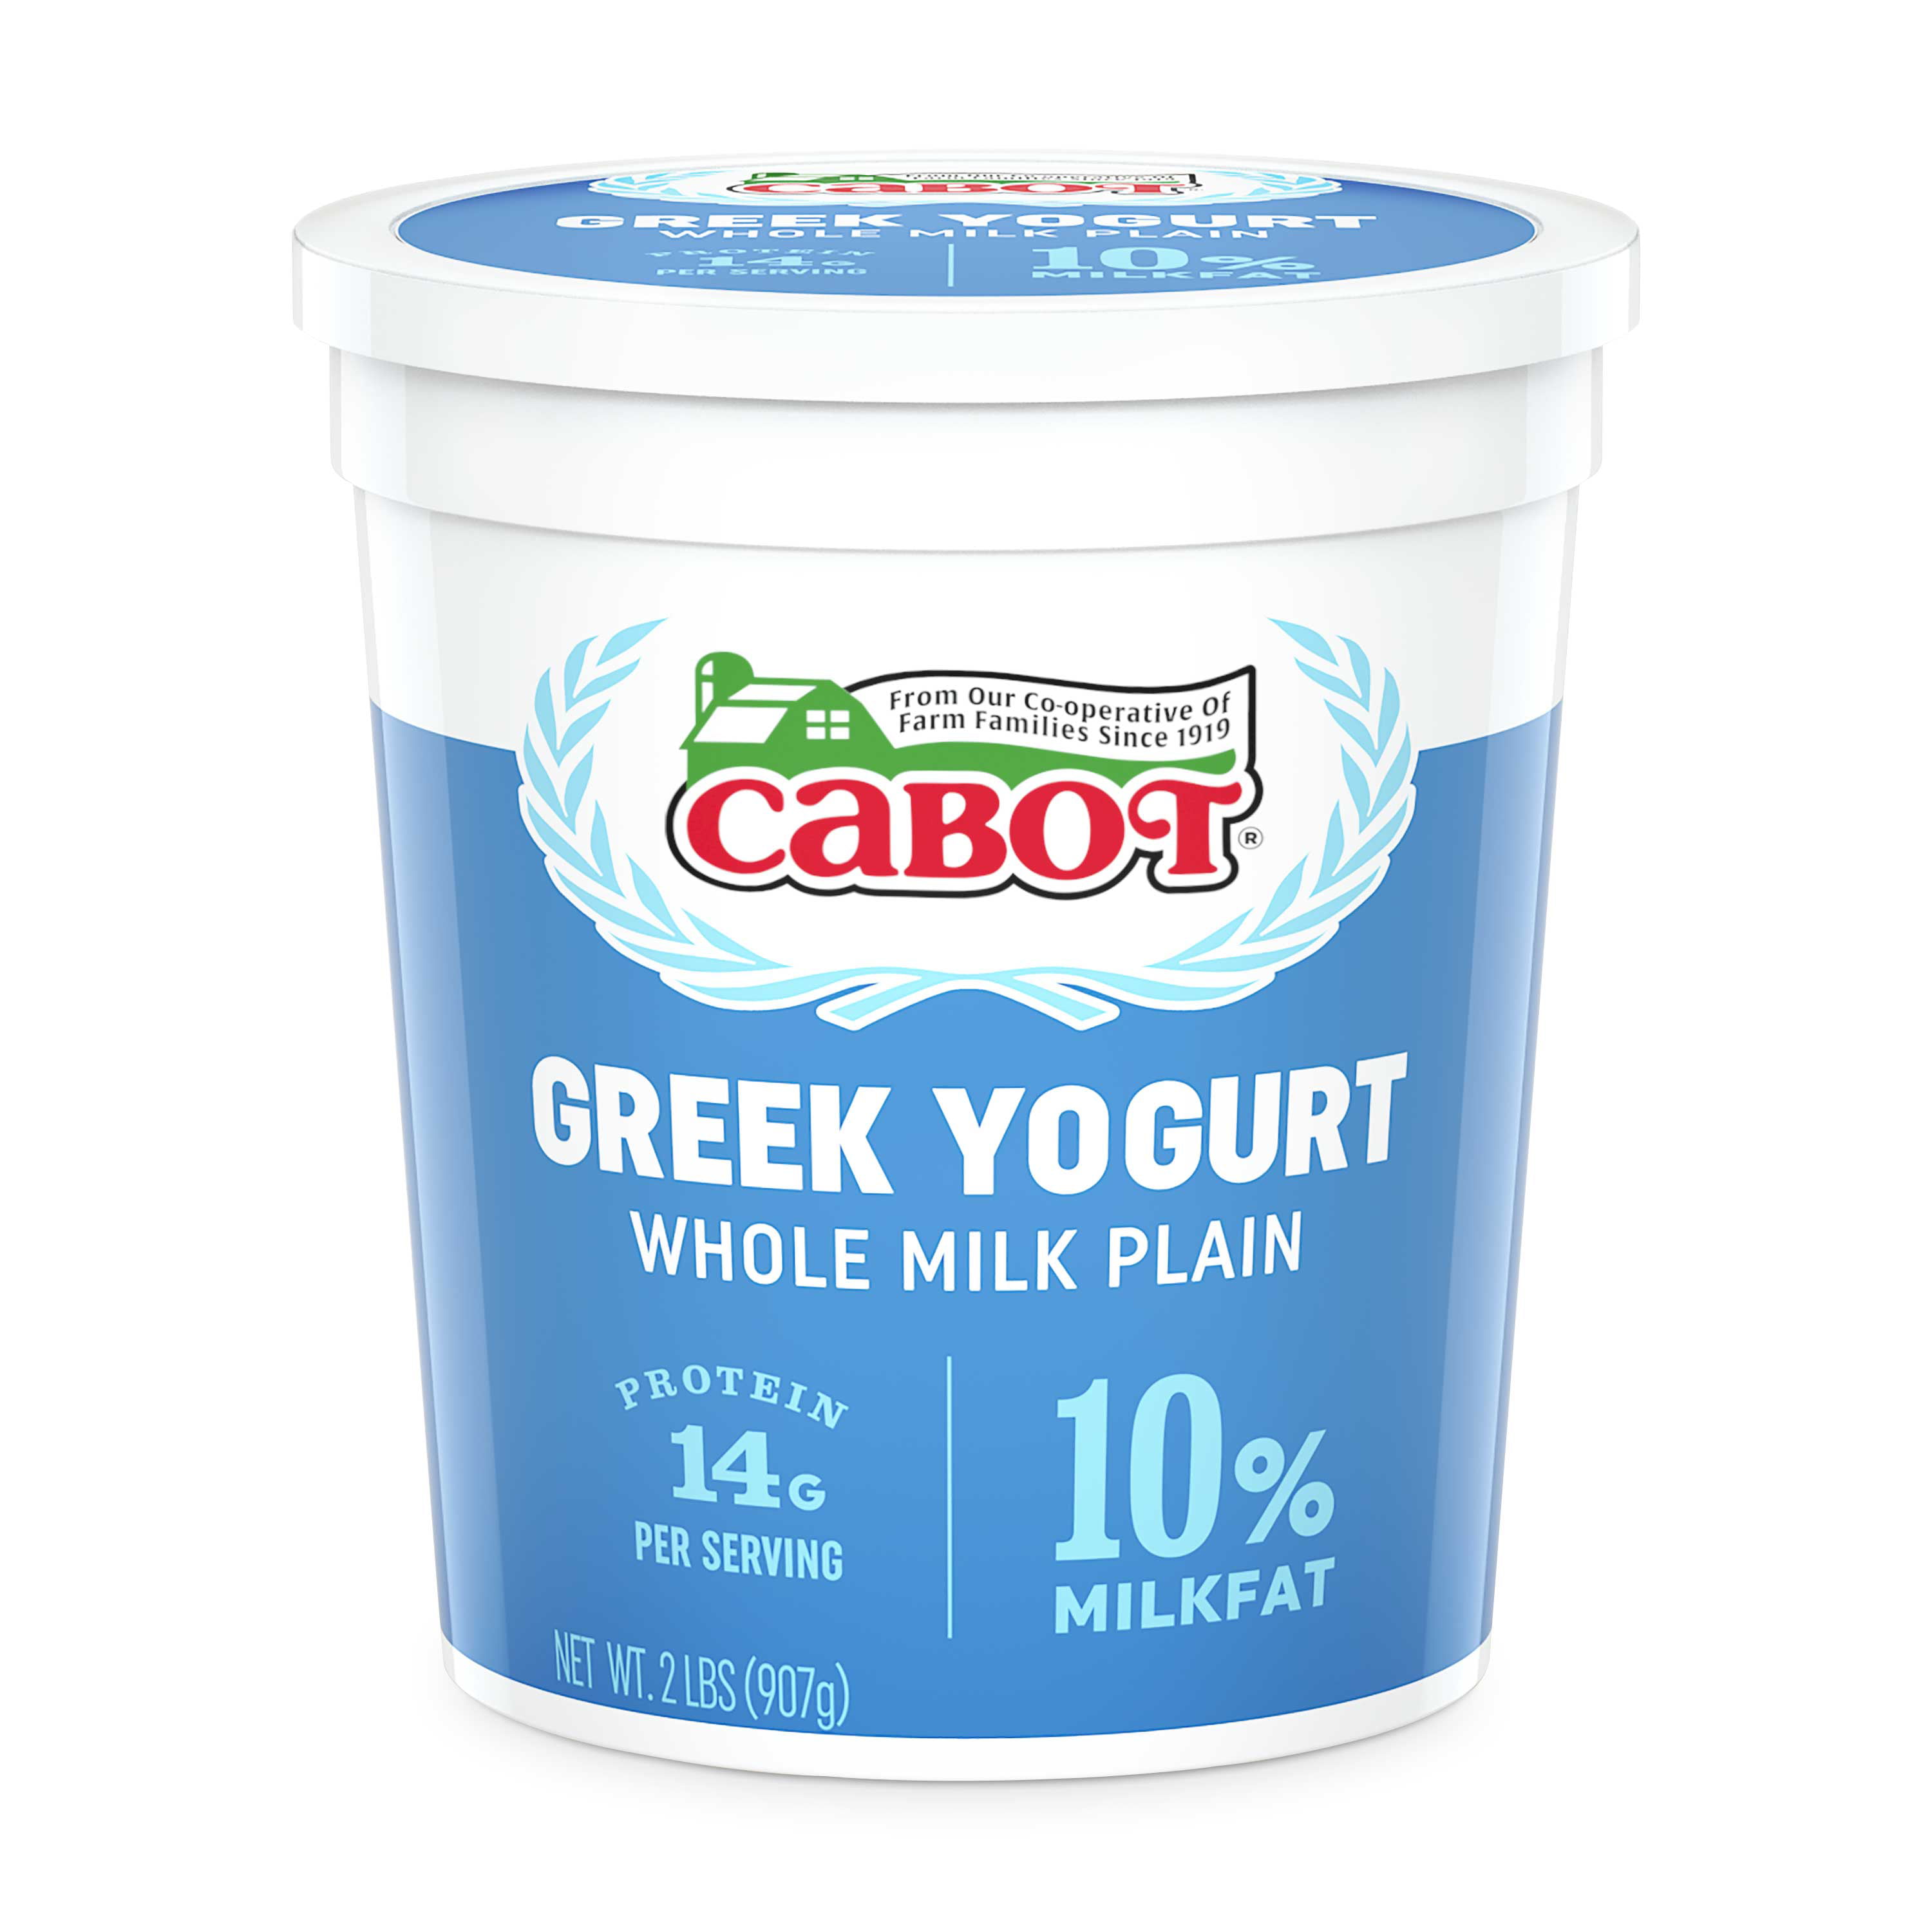 Greek yogurt. Йогурт. Greek Yogurt Plain. Greek Yogurt йогурт. Йогурт греческий упаковка.